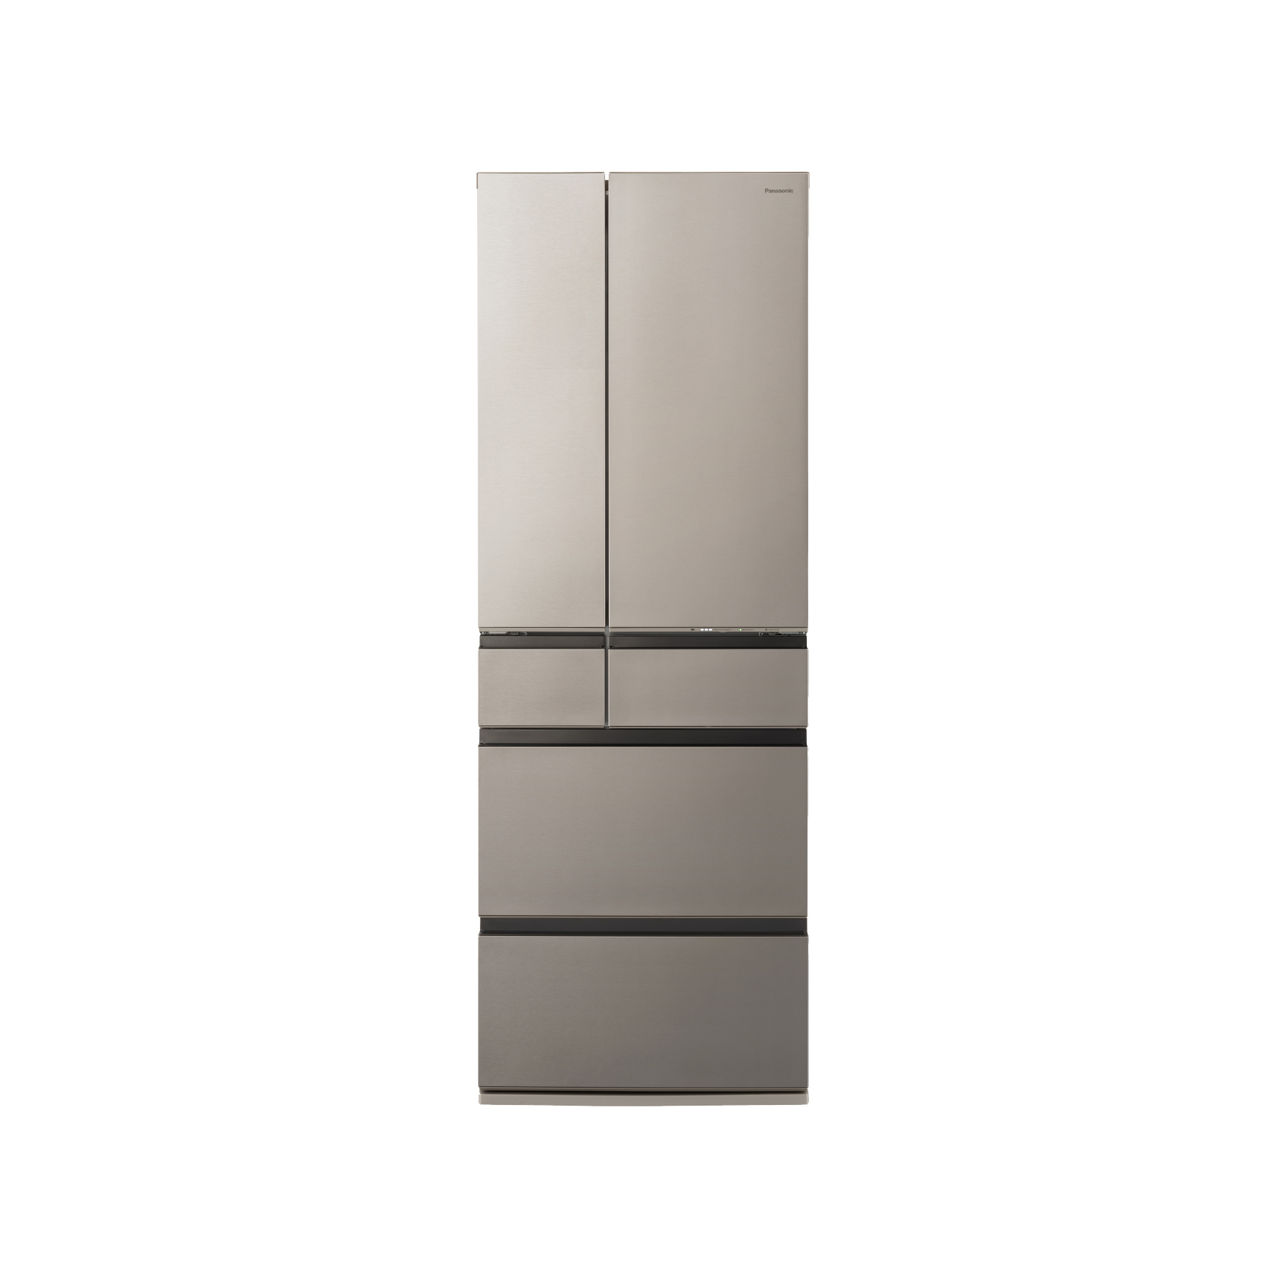 概要 冷凍冷蔵庫 NR-F53HV1 | 冷蔵庫 | Panasonic